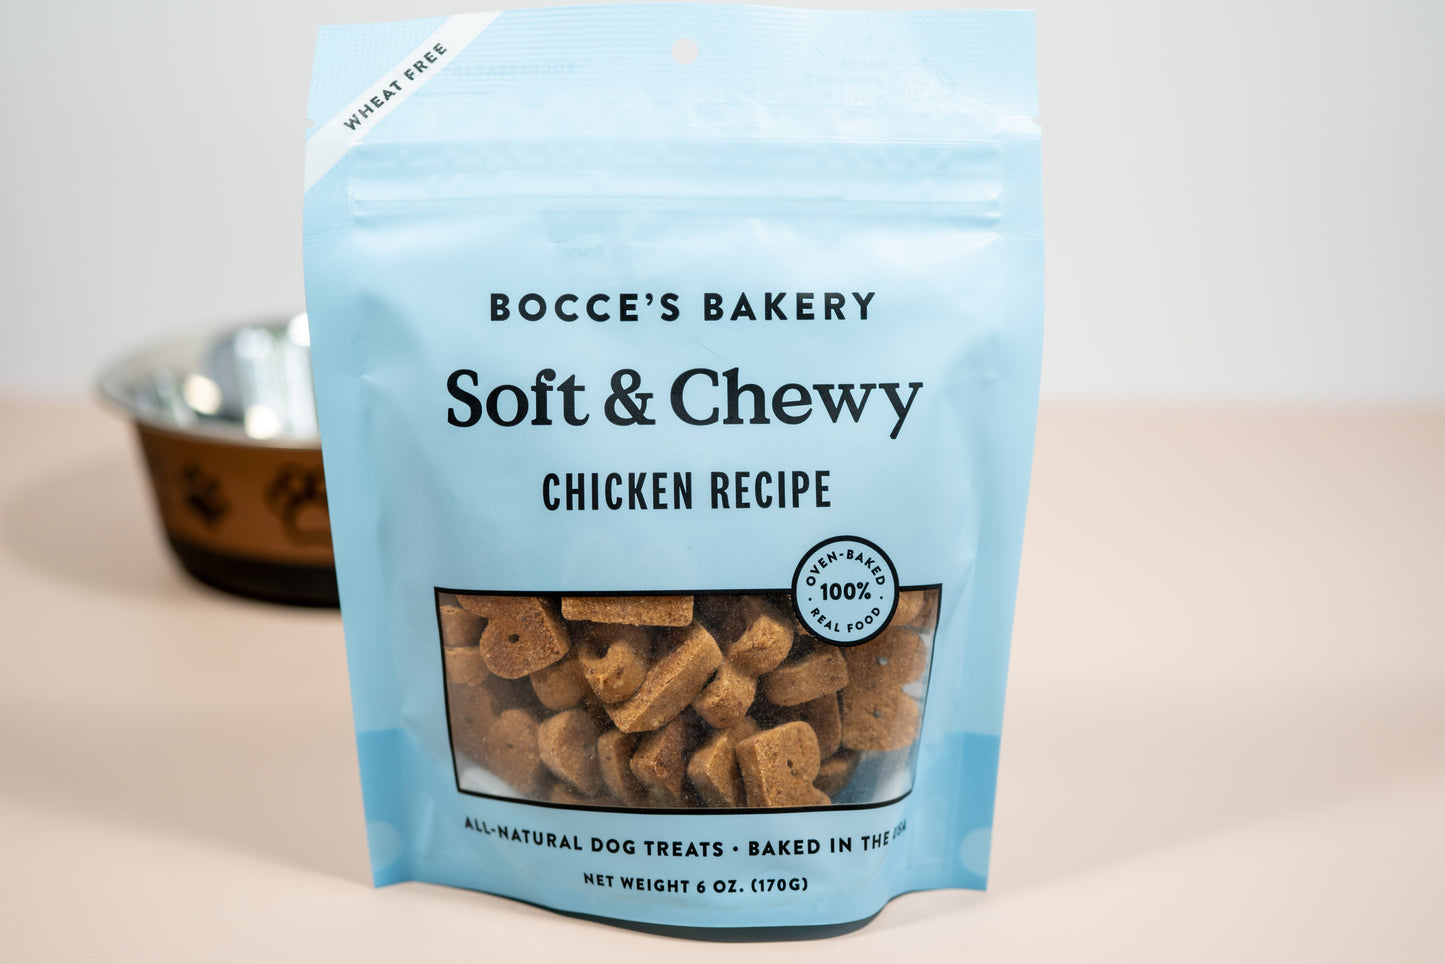 Gâteries pour chiens entièrement naturelles cuites aux États-Unis : recette de poulet moelleux de Bocce's Bakeky pour chiots.